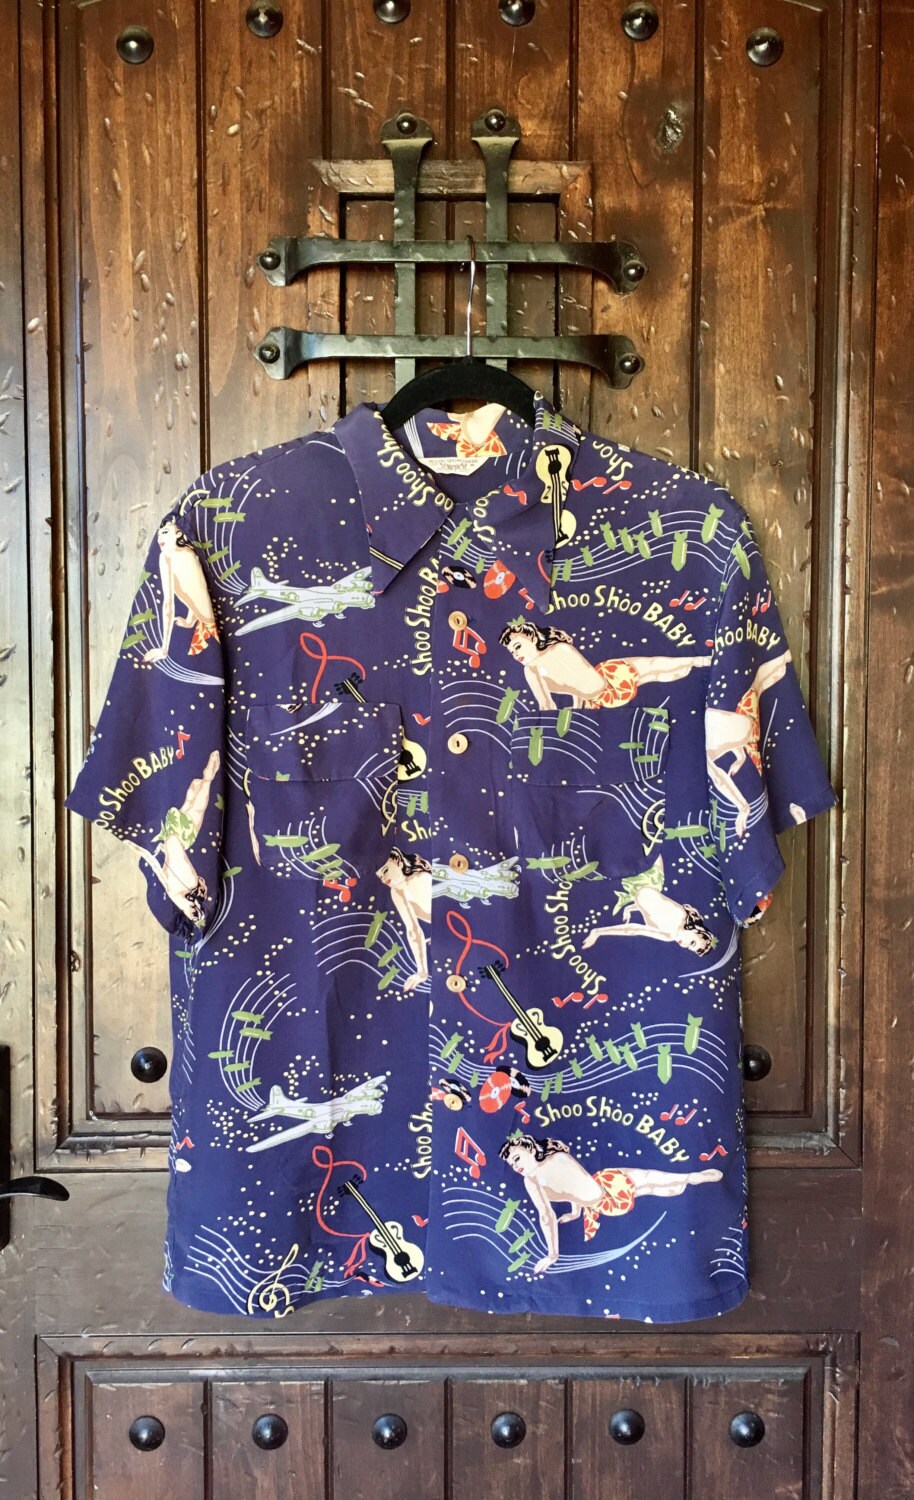 220 Aloha Shirts ideas in 2023 | aloha shirt, shirts, hawaiian shirt